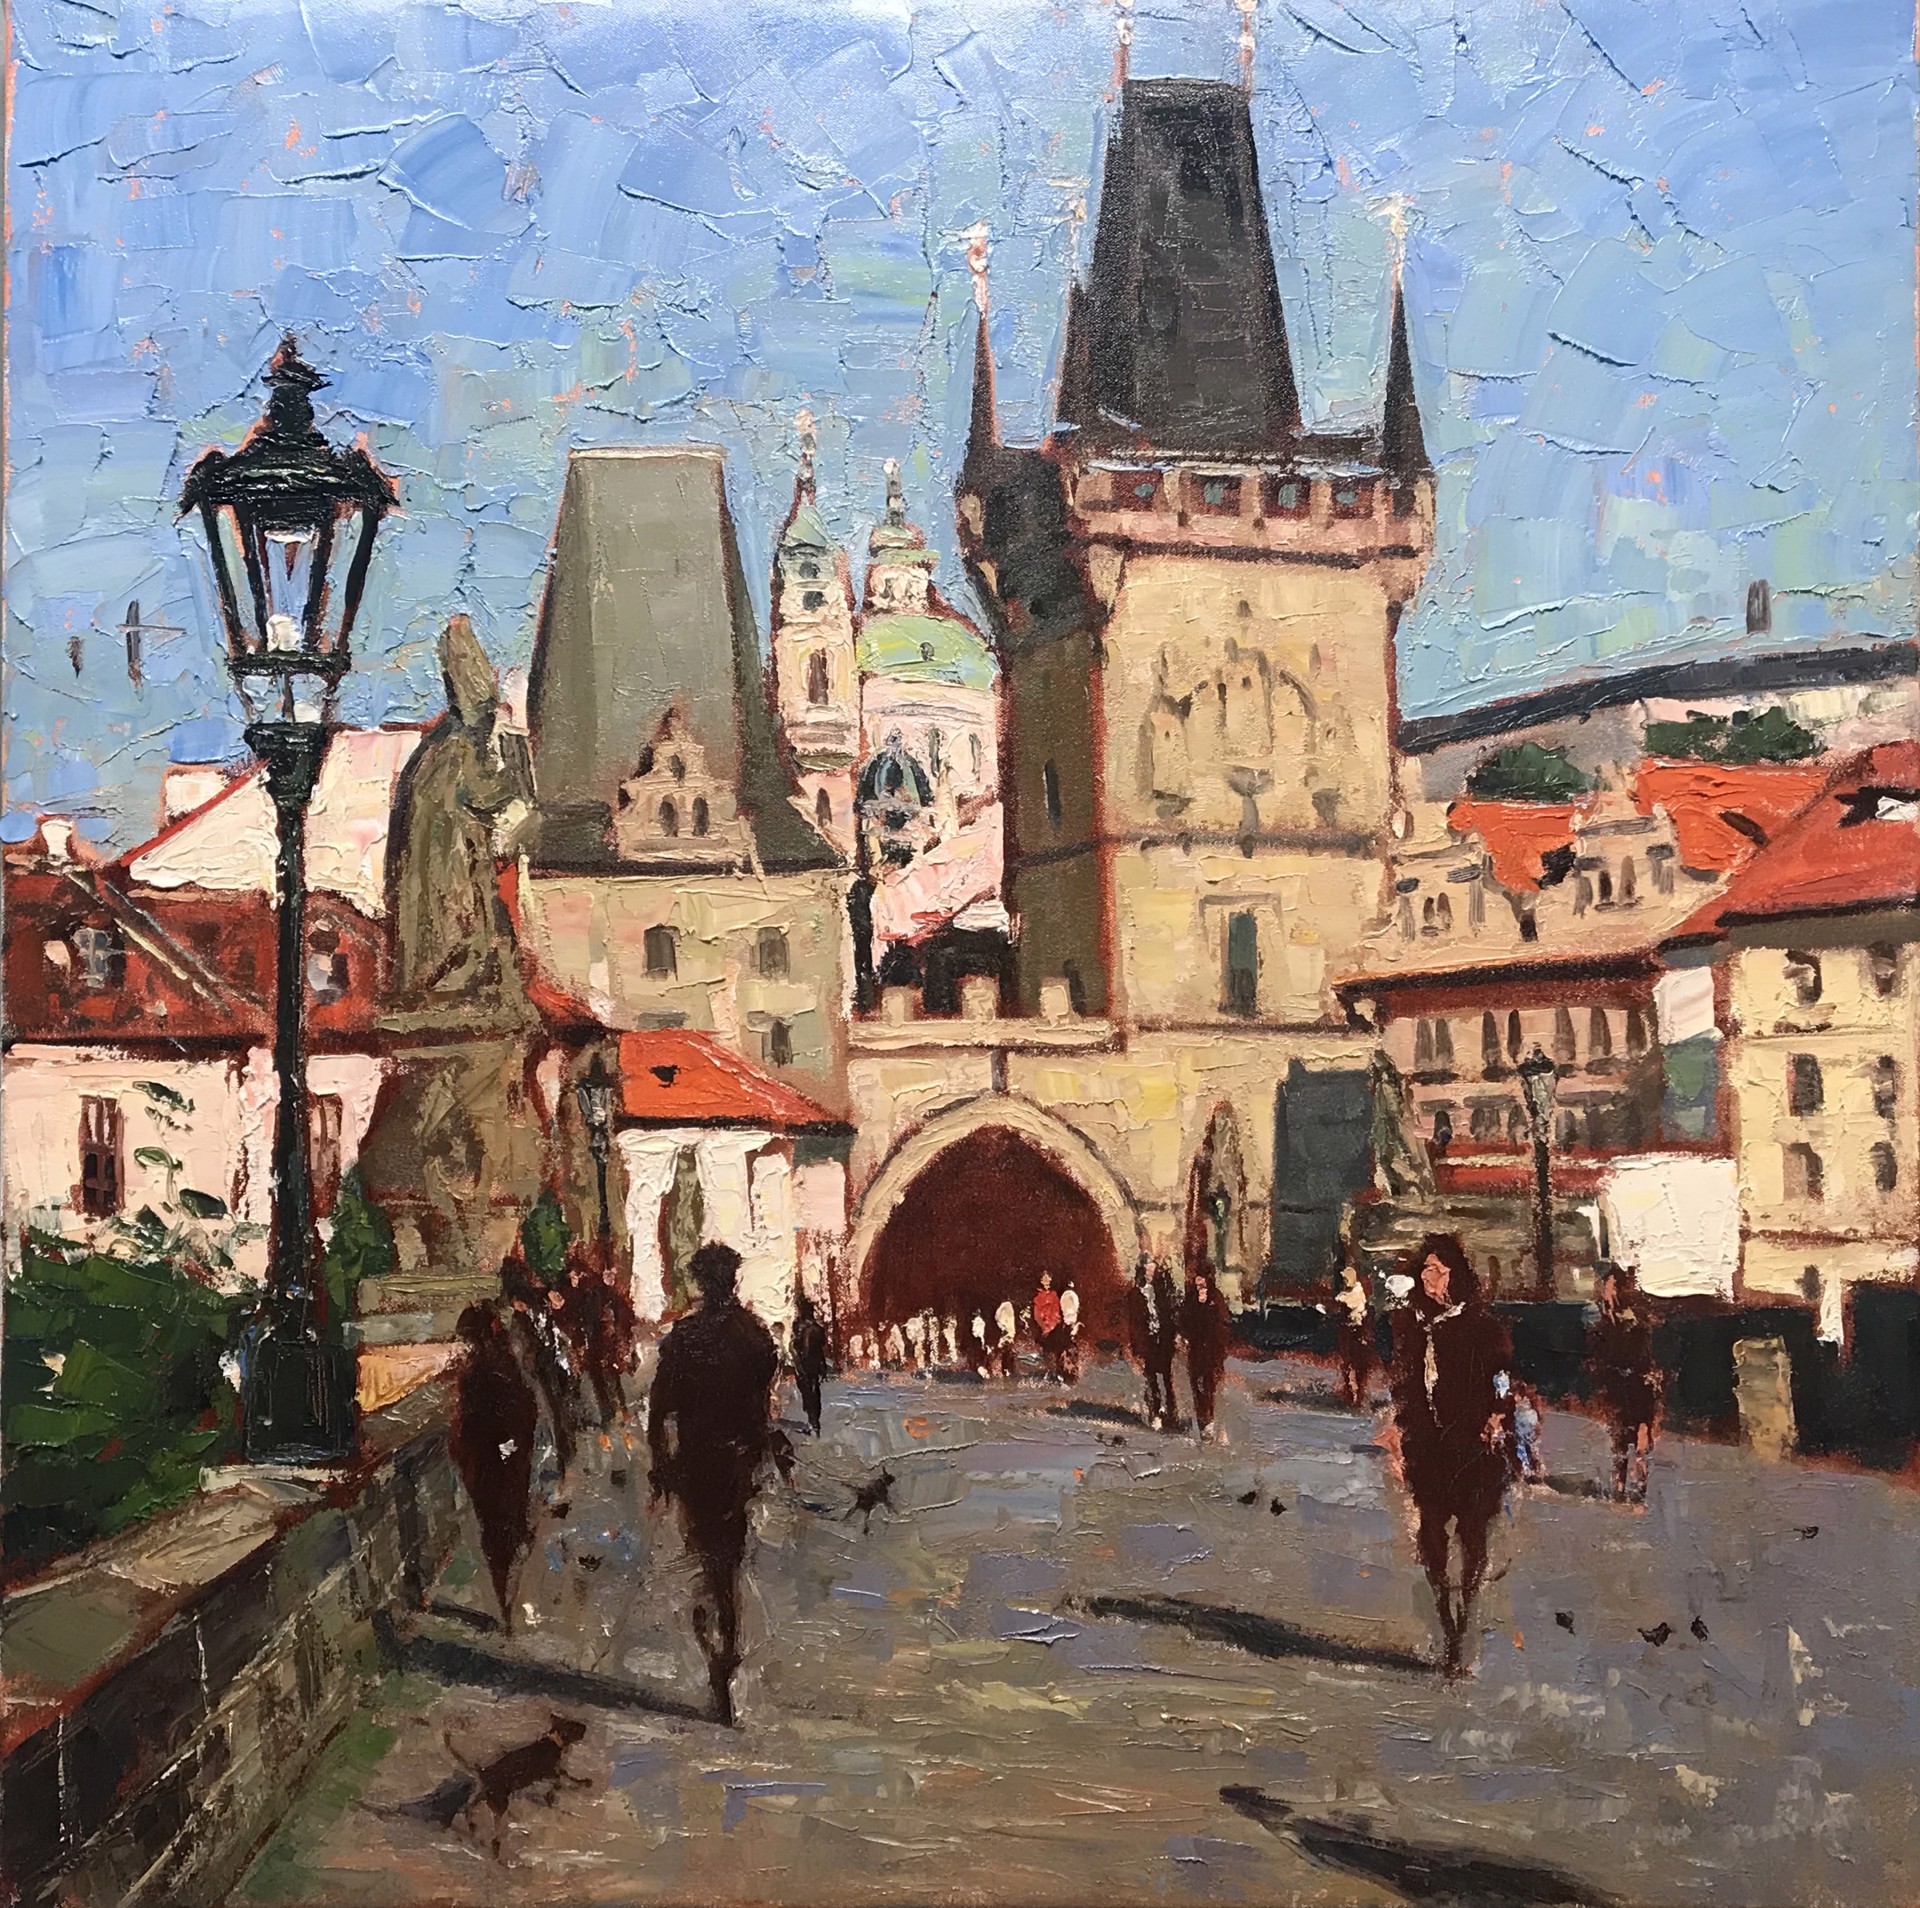 Morning Walks in Prague by Brett Weaver